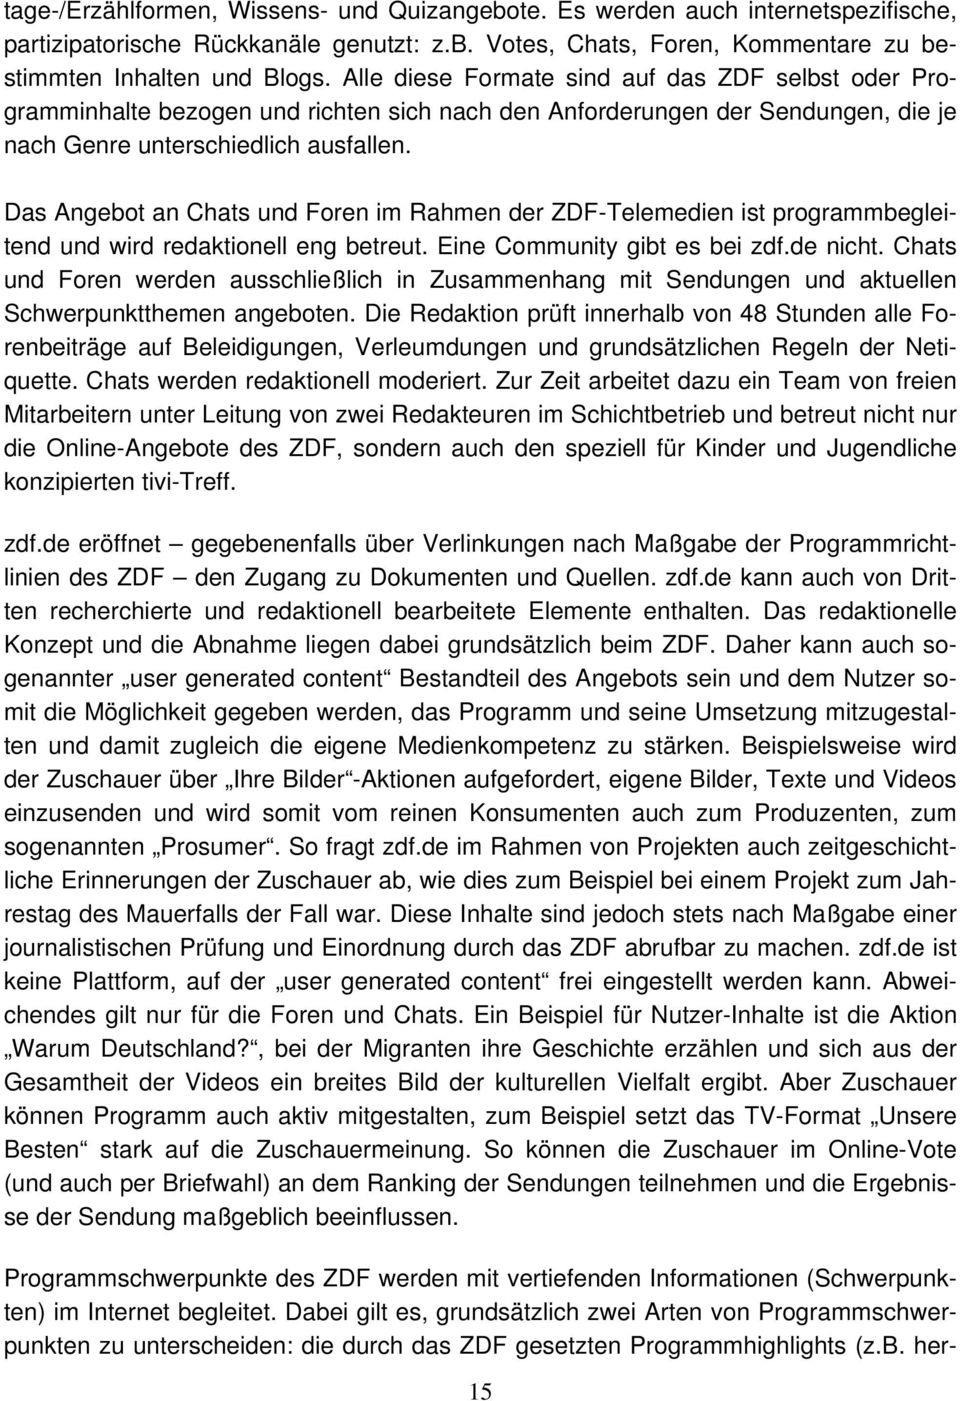 Das Angebot an Chats und Foren im Rahmen der ZDF-Telemedien ist programmbegleitend und wird redaktionell eng betreut. Eine Community gibt es bei zdf.de nicht.